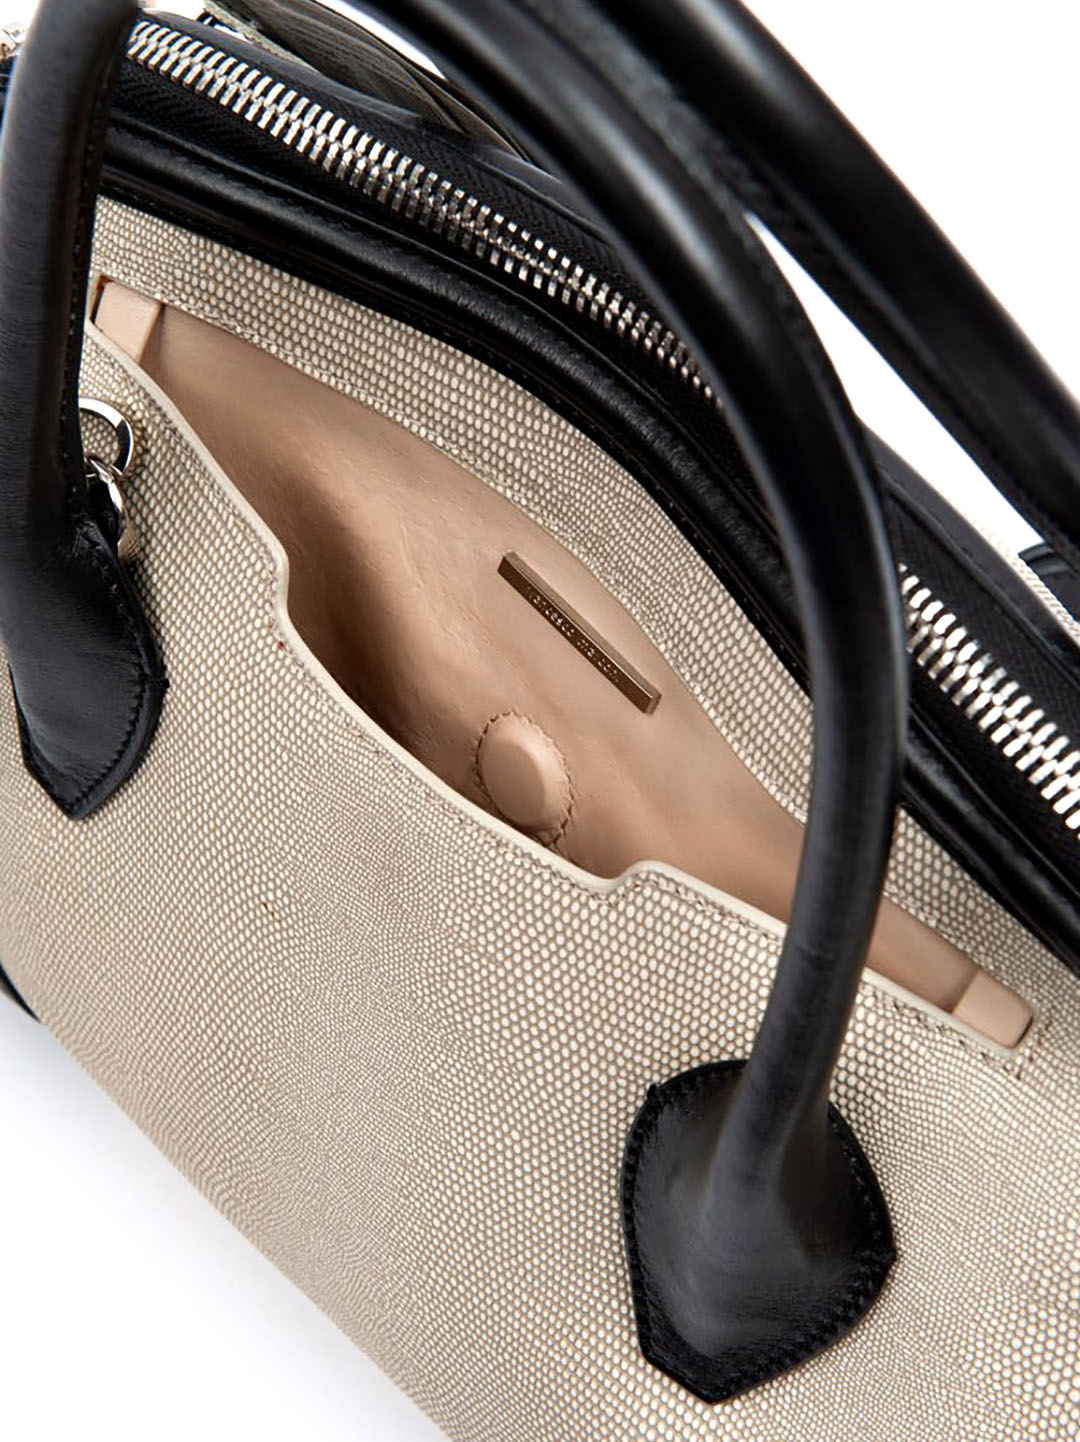 Фото Оригинальная женская сумка-тоут из натуральной кожи с выделкой под кожу ската Классические сумки